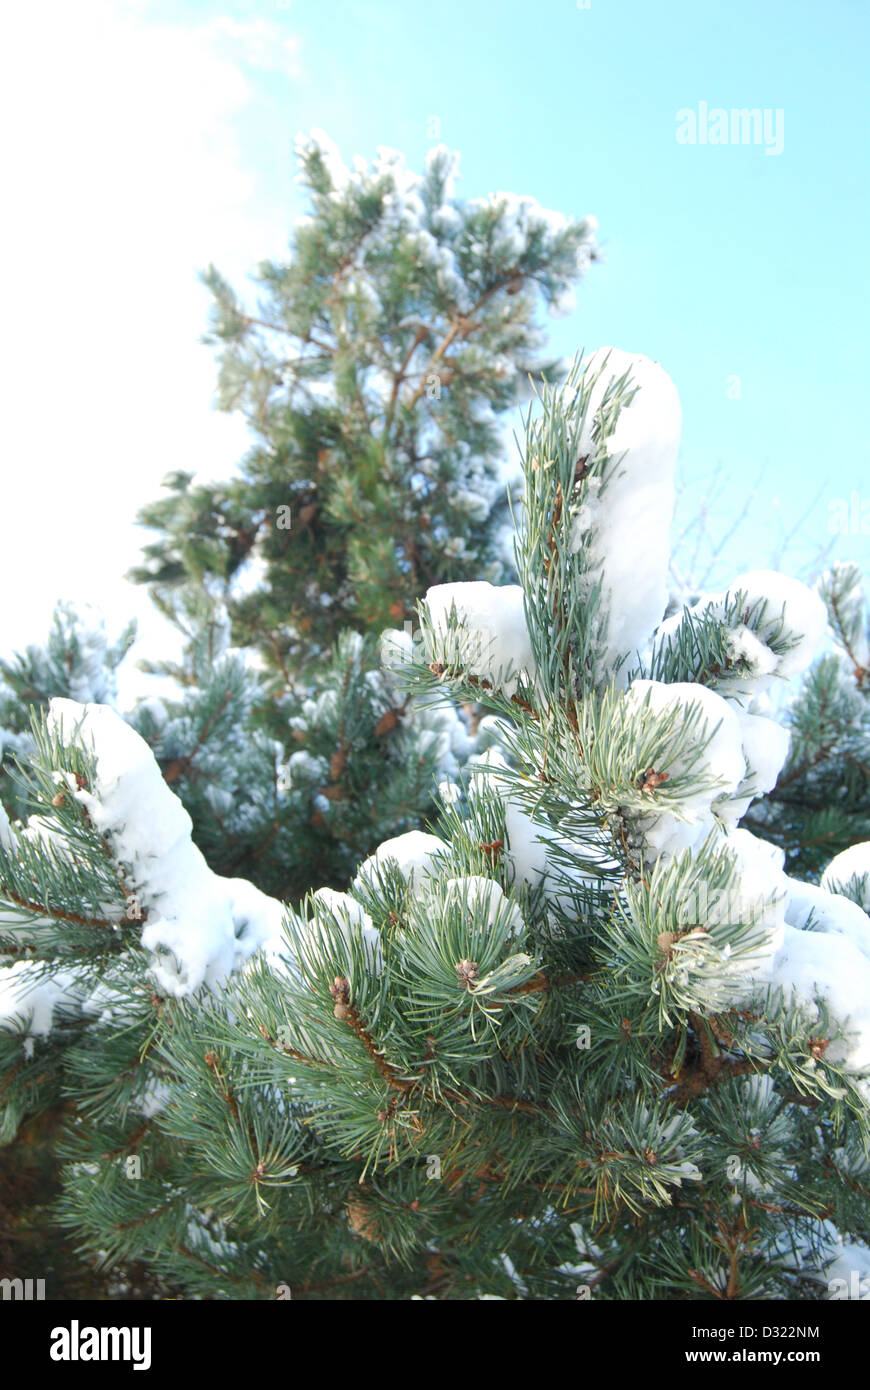 Una coperta di neve albero in inverno contro un luminoso cielo azzurro sfondo con ogni felce fittamente ricoperta di brina molto pittoresco Foto Stock